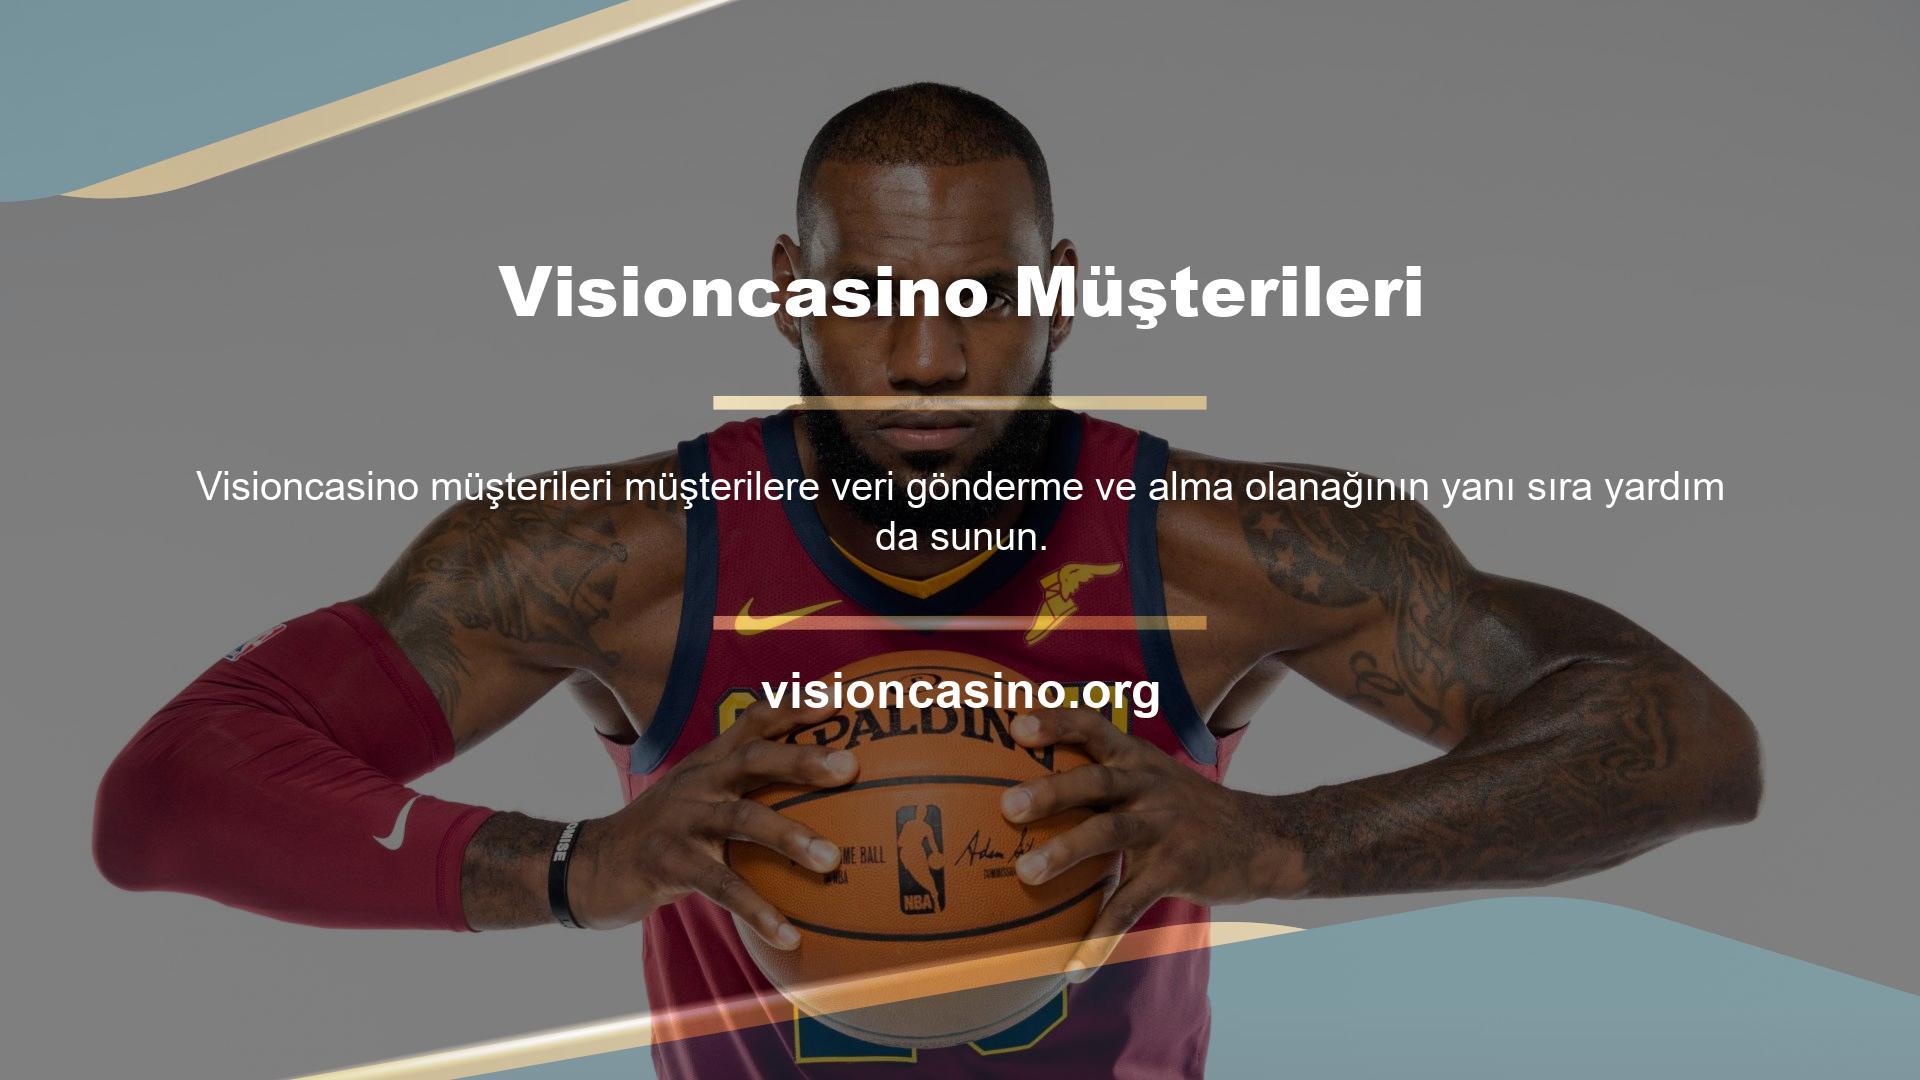 Bu fırsat kapsamında Visioncasino yeni adresi sorunsuz bir şekilde paylaşılabilecek